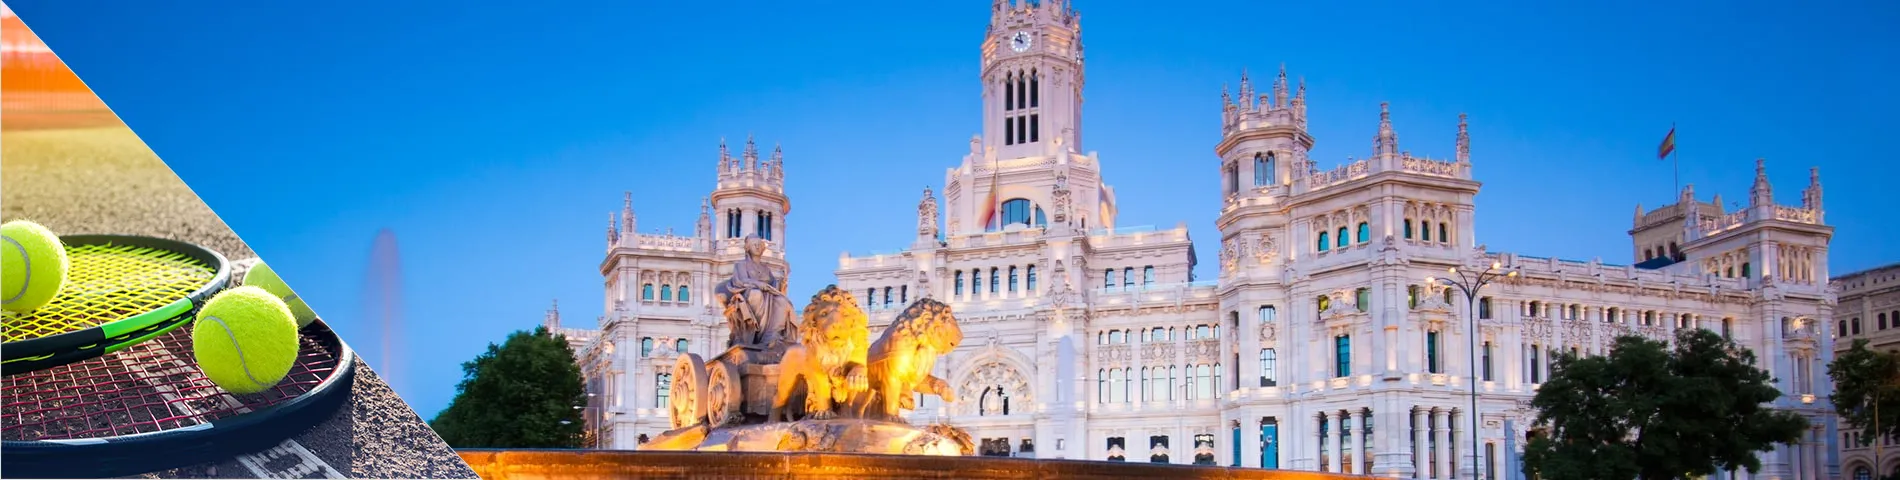 مدريد - تعلم اللغة والتنس